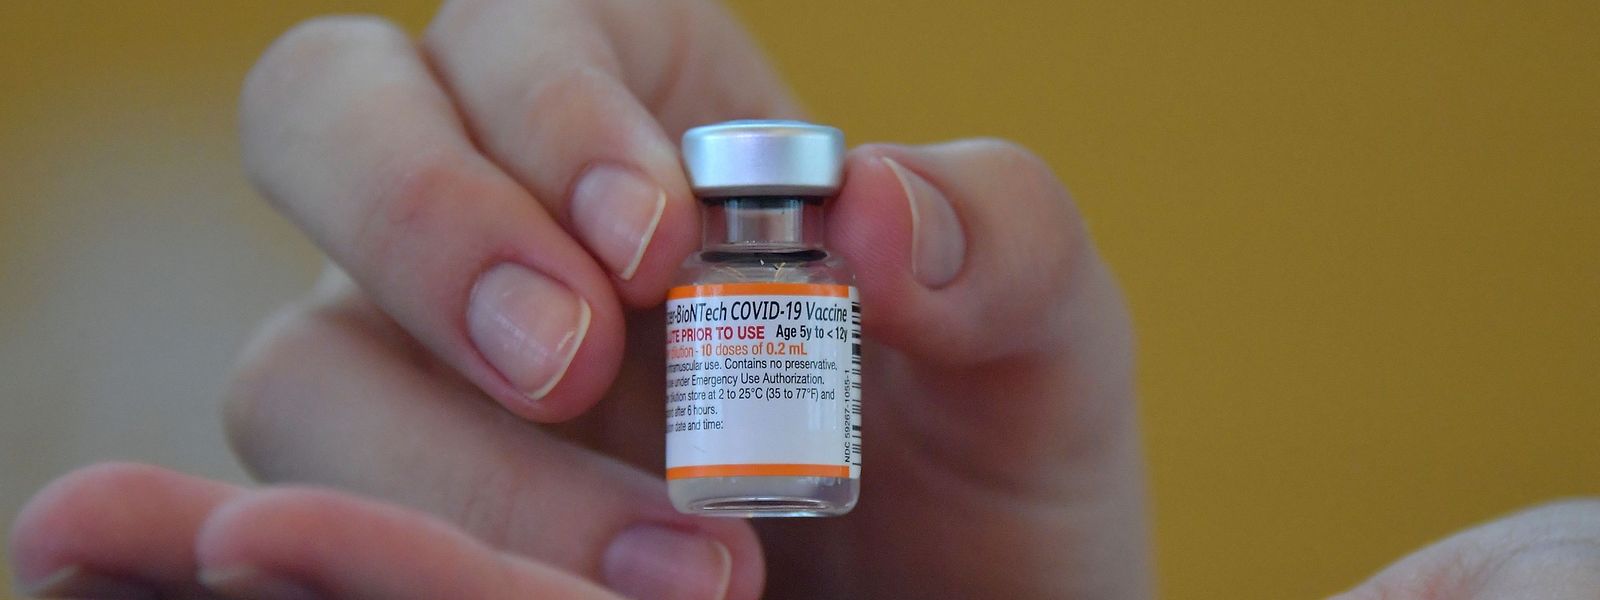 Während die reichen Ländern über genügend Corona-Impfstoff verfügen, müssen sich die meisten ärmeren Länder weiterhin gedulden und auf die Einlösung der Impfversprechen warten.